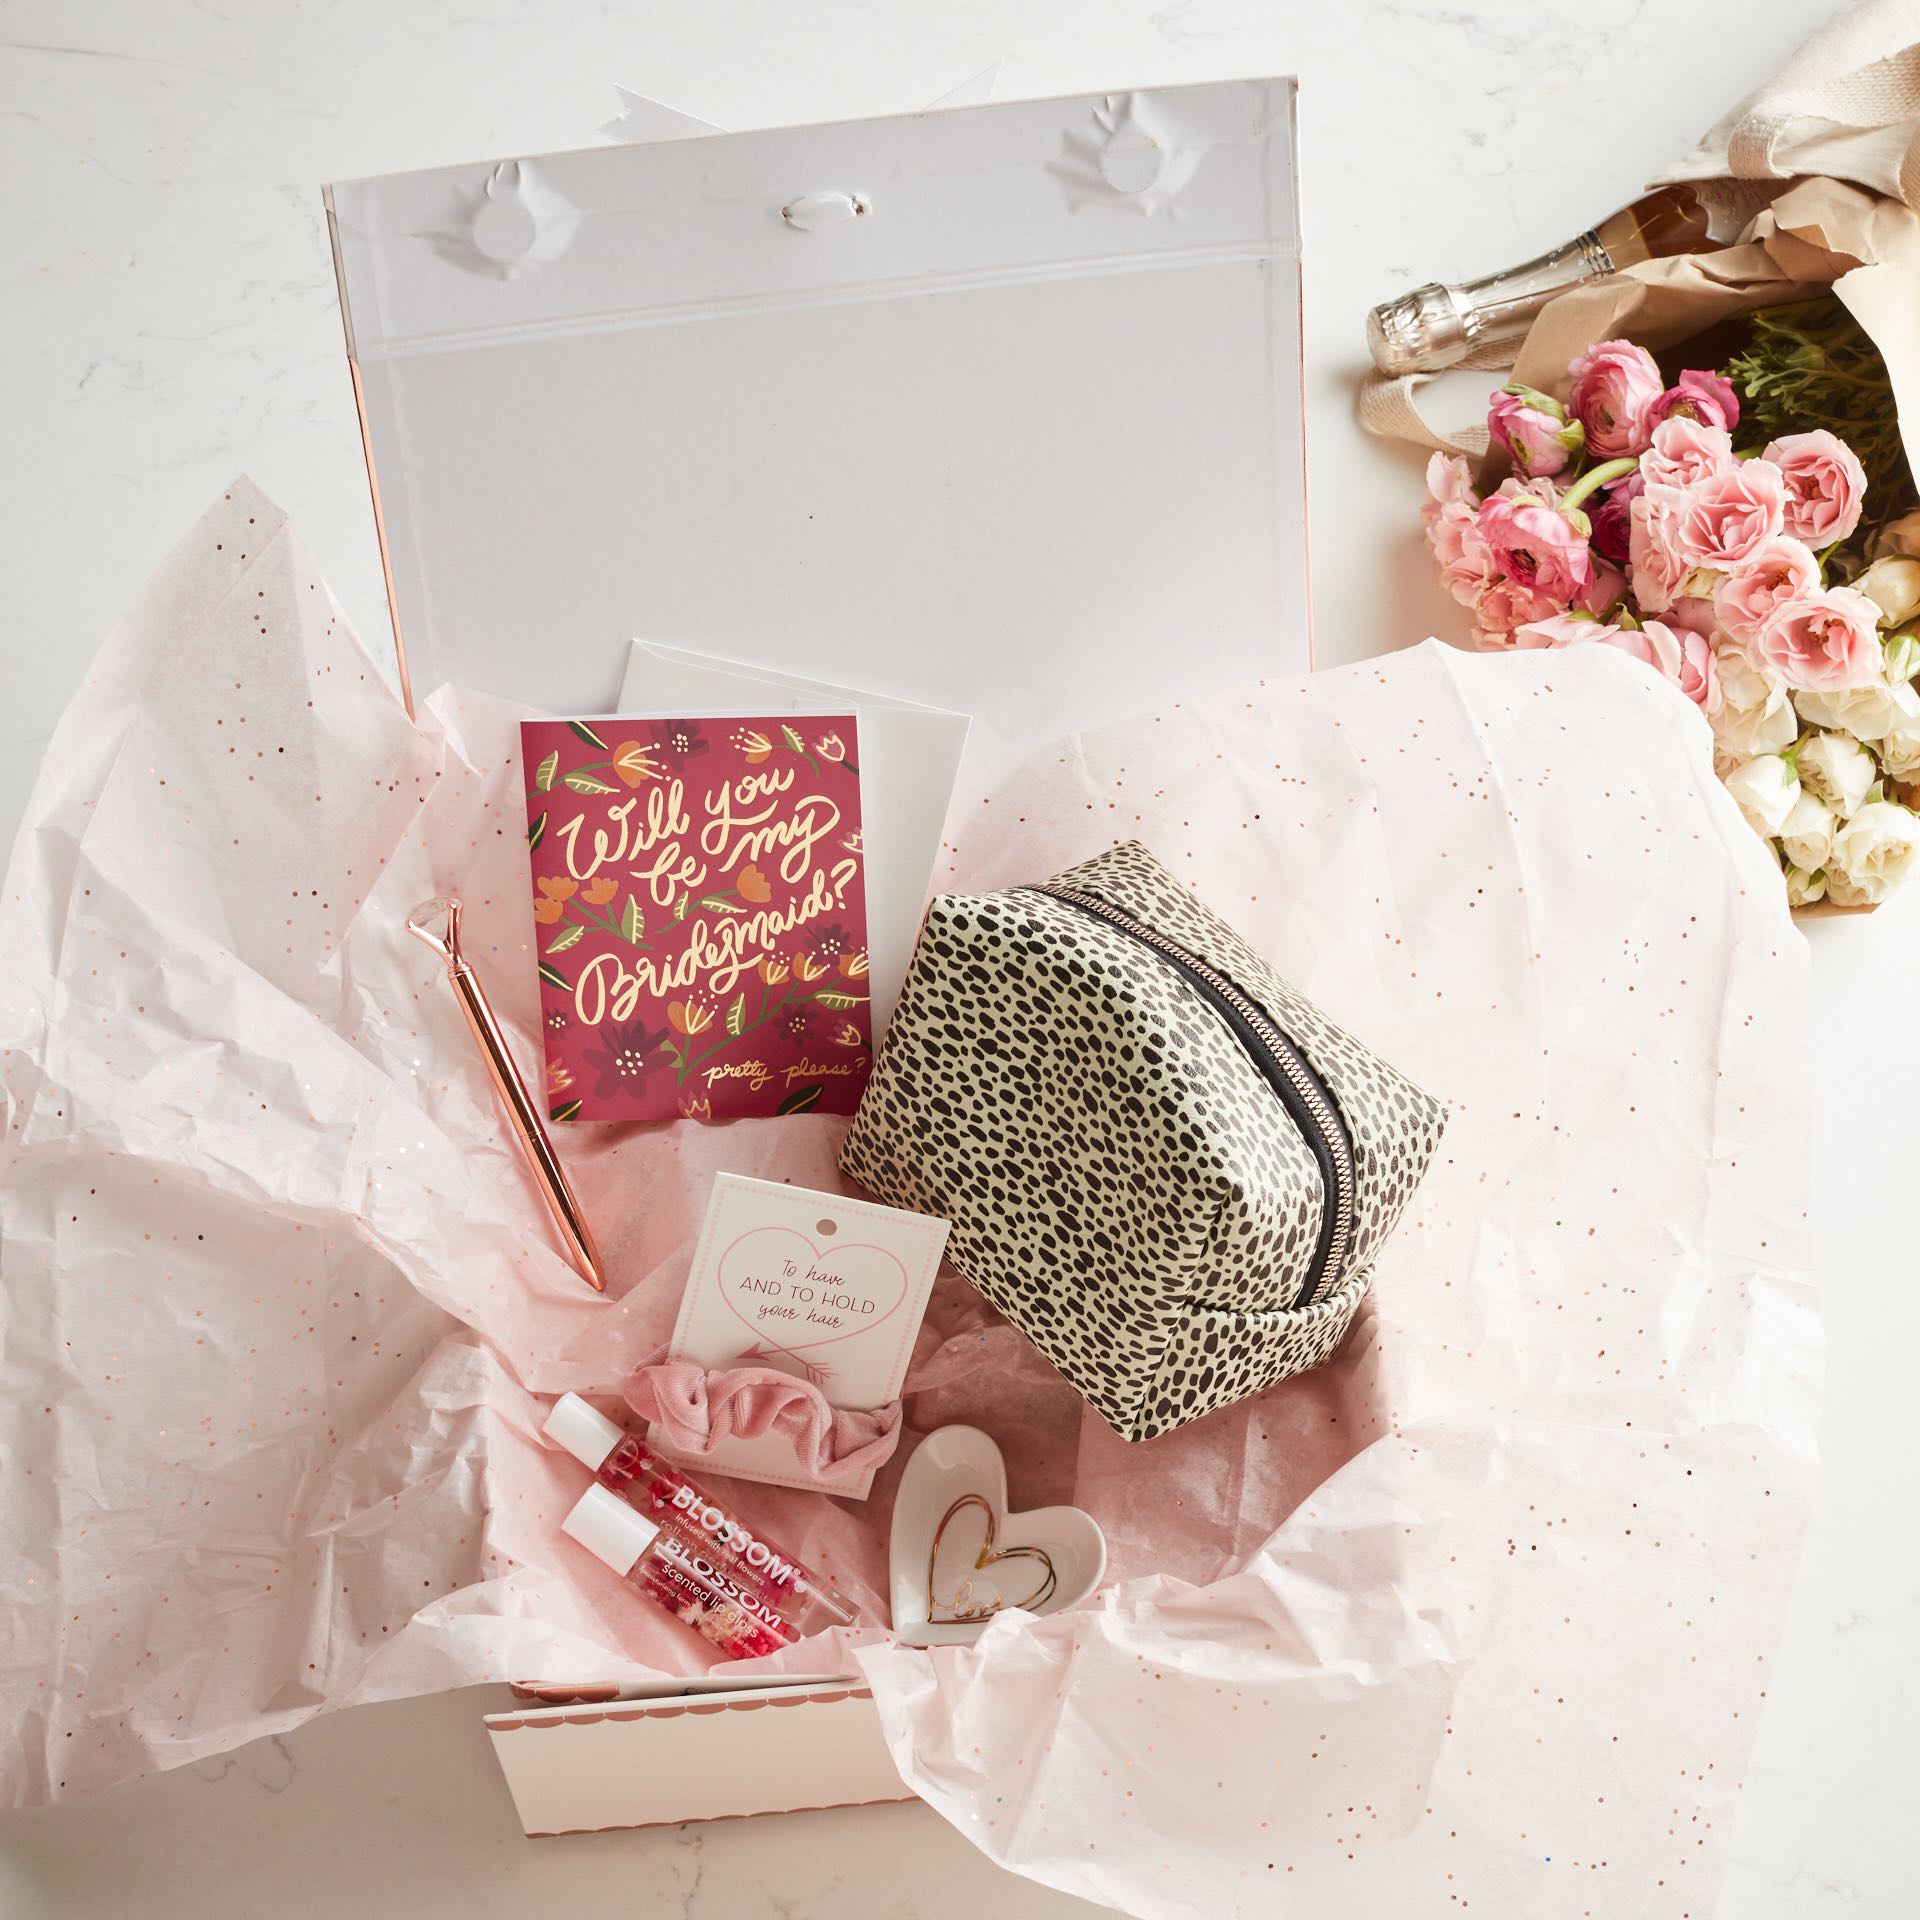 Personalised Gift Box,Bridal Gift Box,Bridesmaid Box,Bridesmaid Proposal Box,Wedding Gift Box,Bridesmaid Gift Box